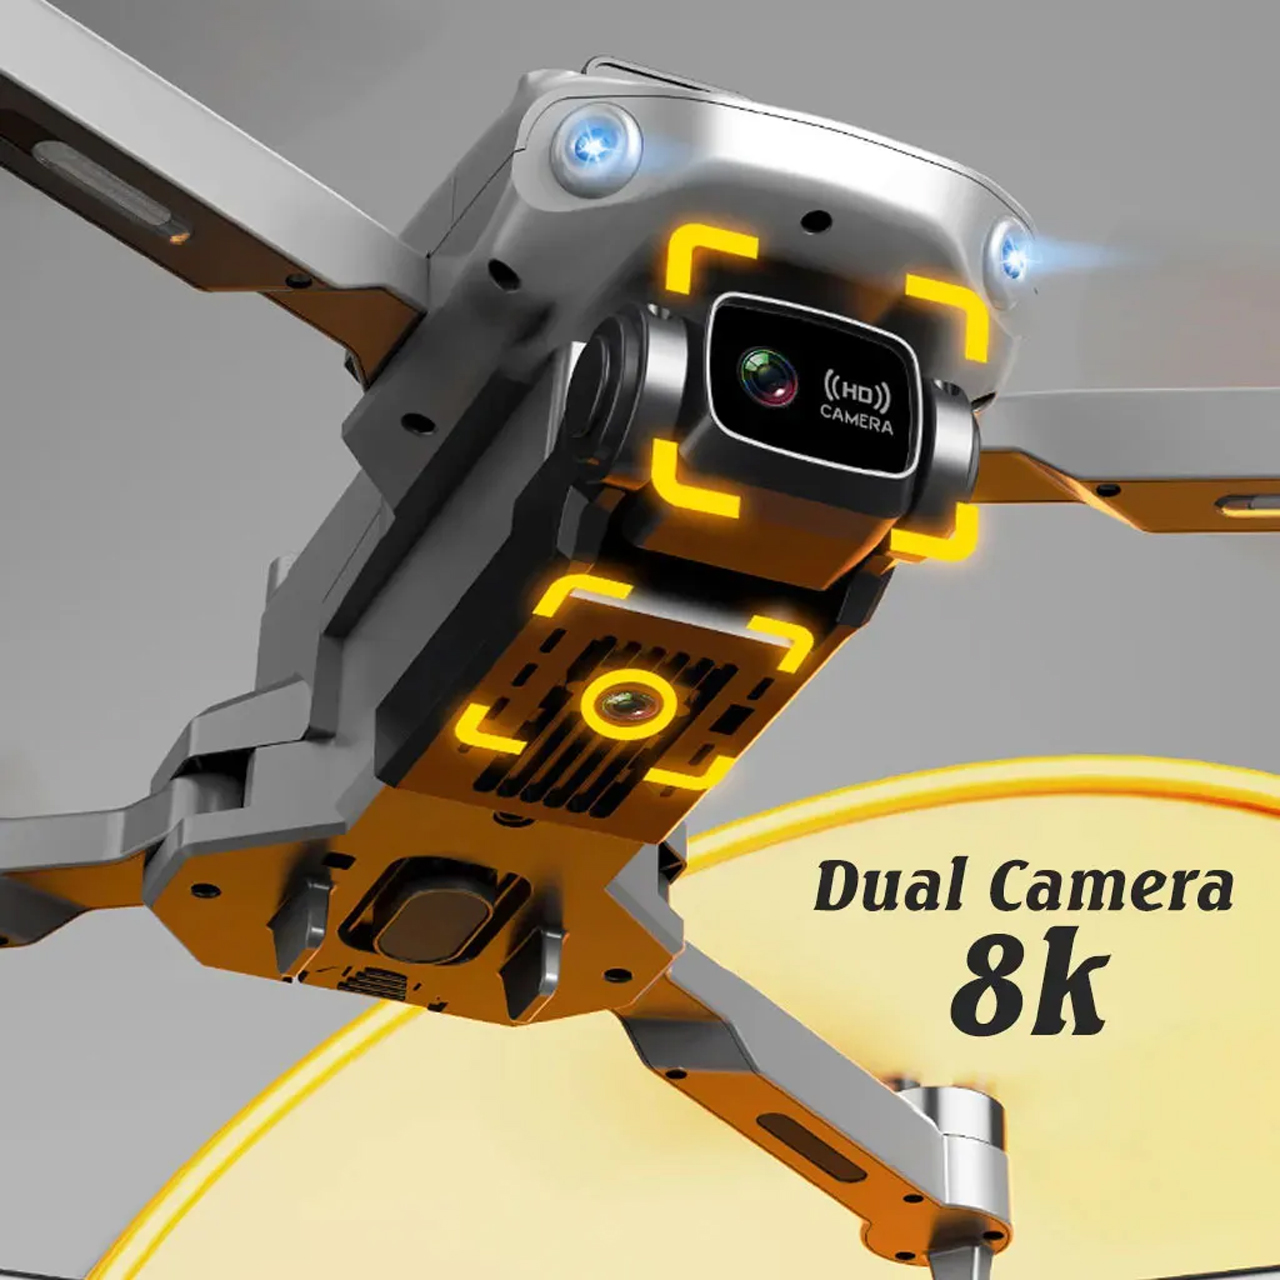 Flycam mini giá rẻ camera kép 4K K998 máy bay điều khiển từ xa drone S11 Pro có cảm biến tránh va chạm, bay 25 phút, truyền hình ảnh trực tiếp về điện thoại, G.P.S tự quay trở về, động cơ không chổi than - hàng chính hãng